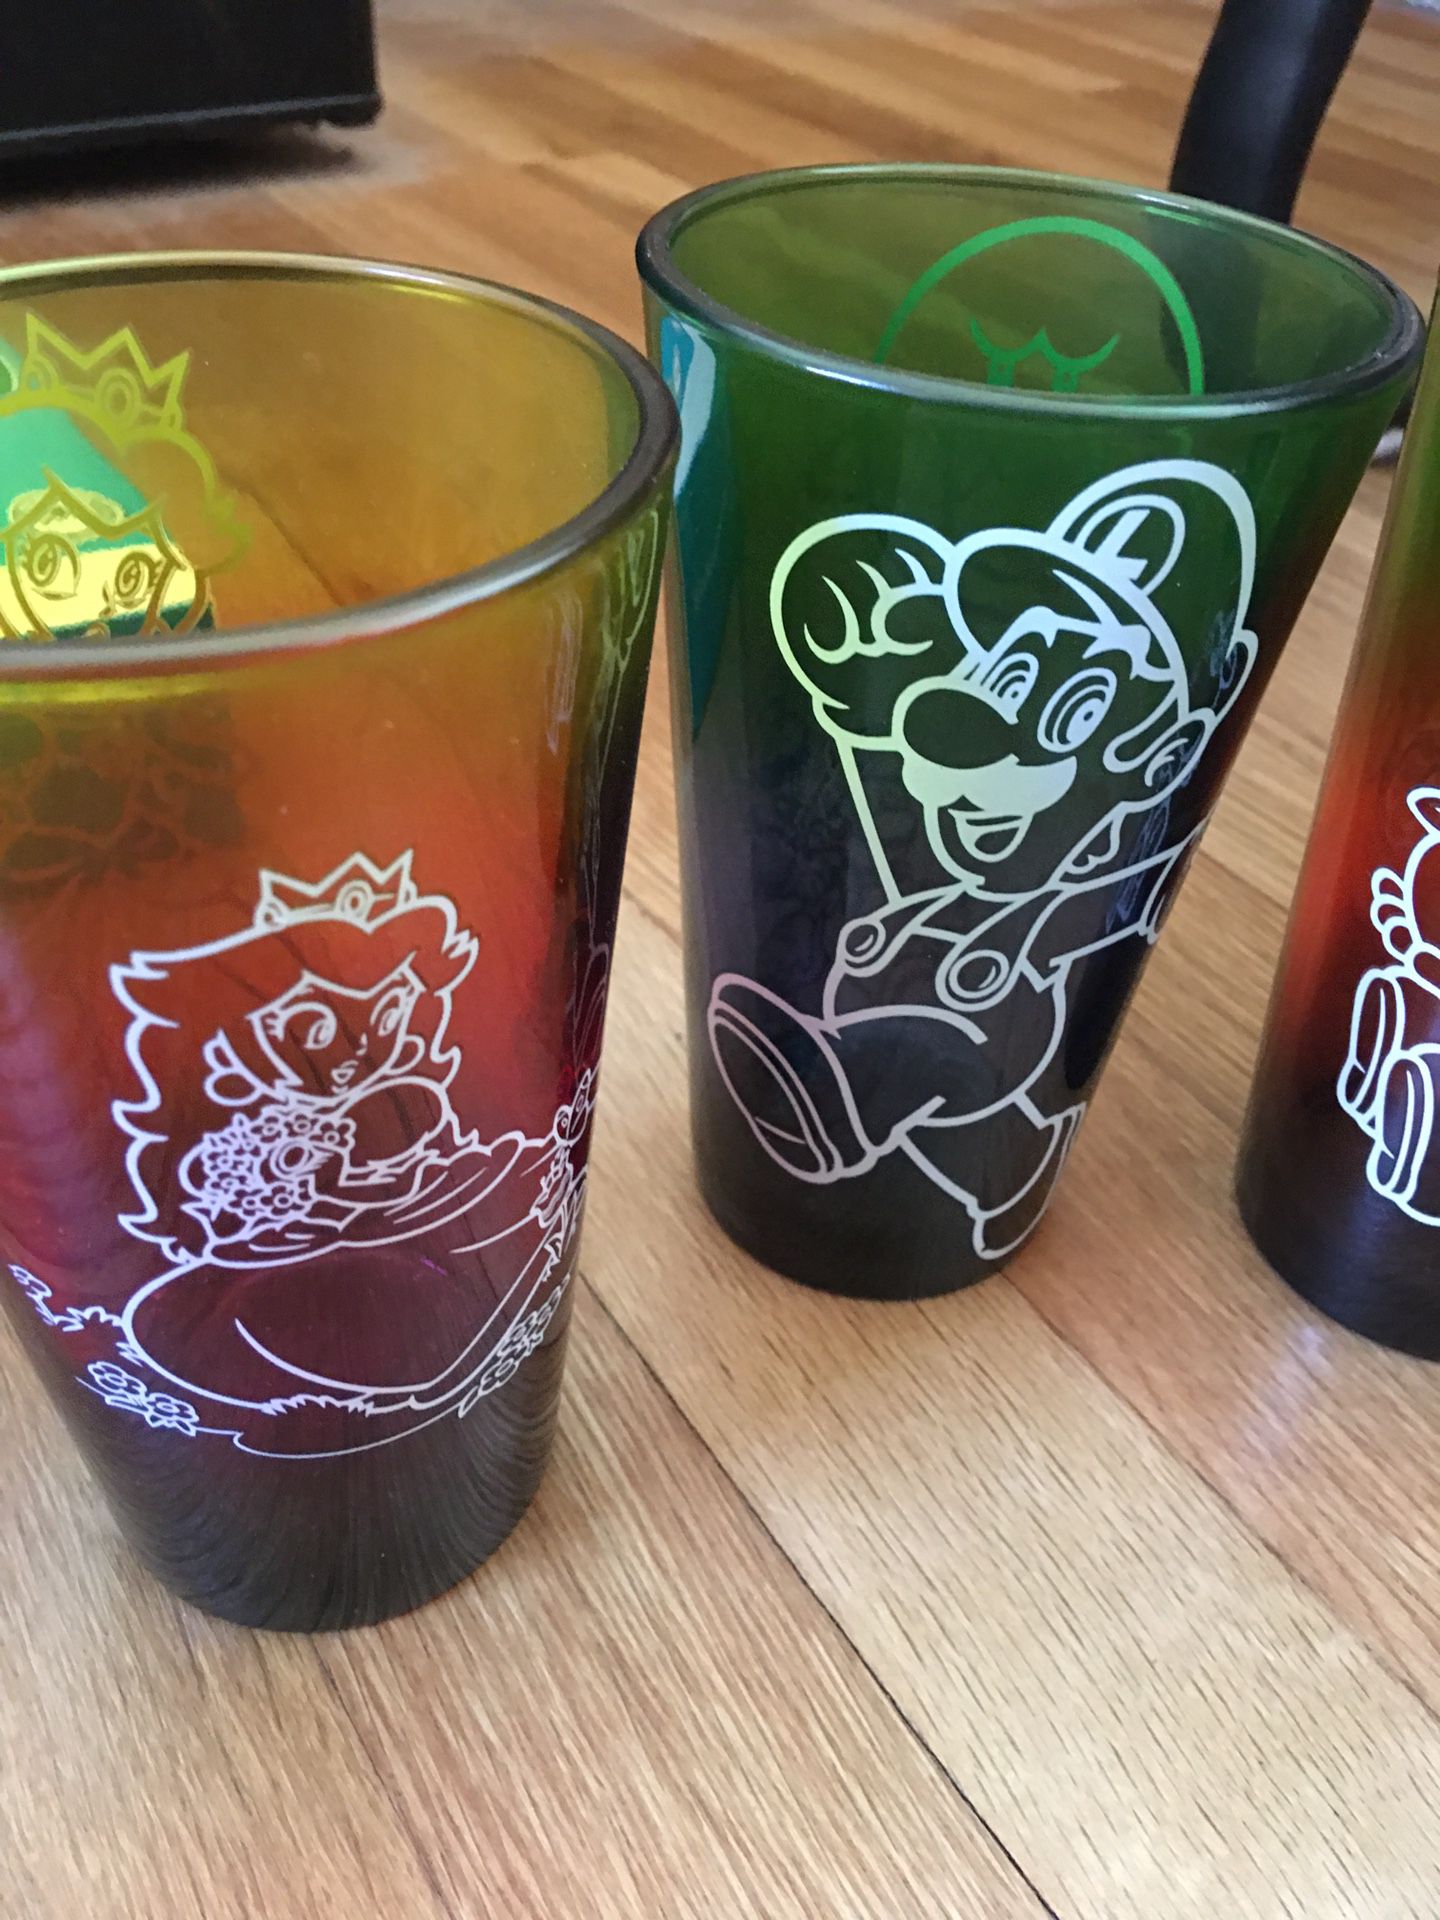 Rare Mario pint glasses 5 total!